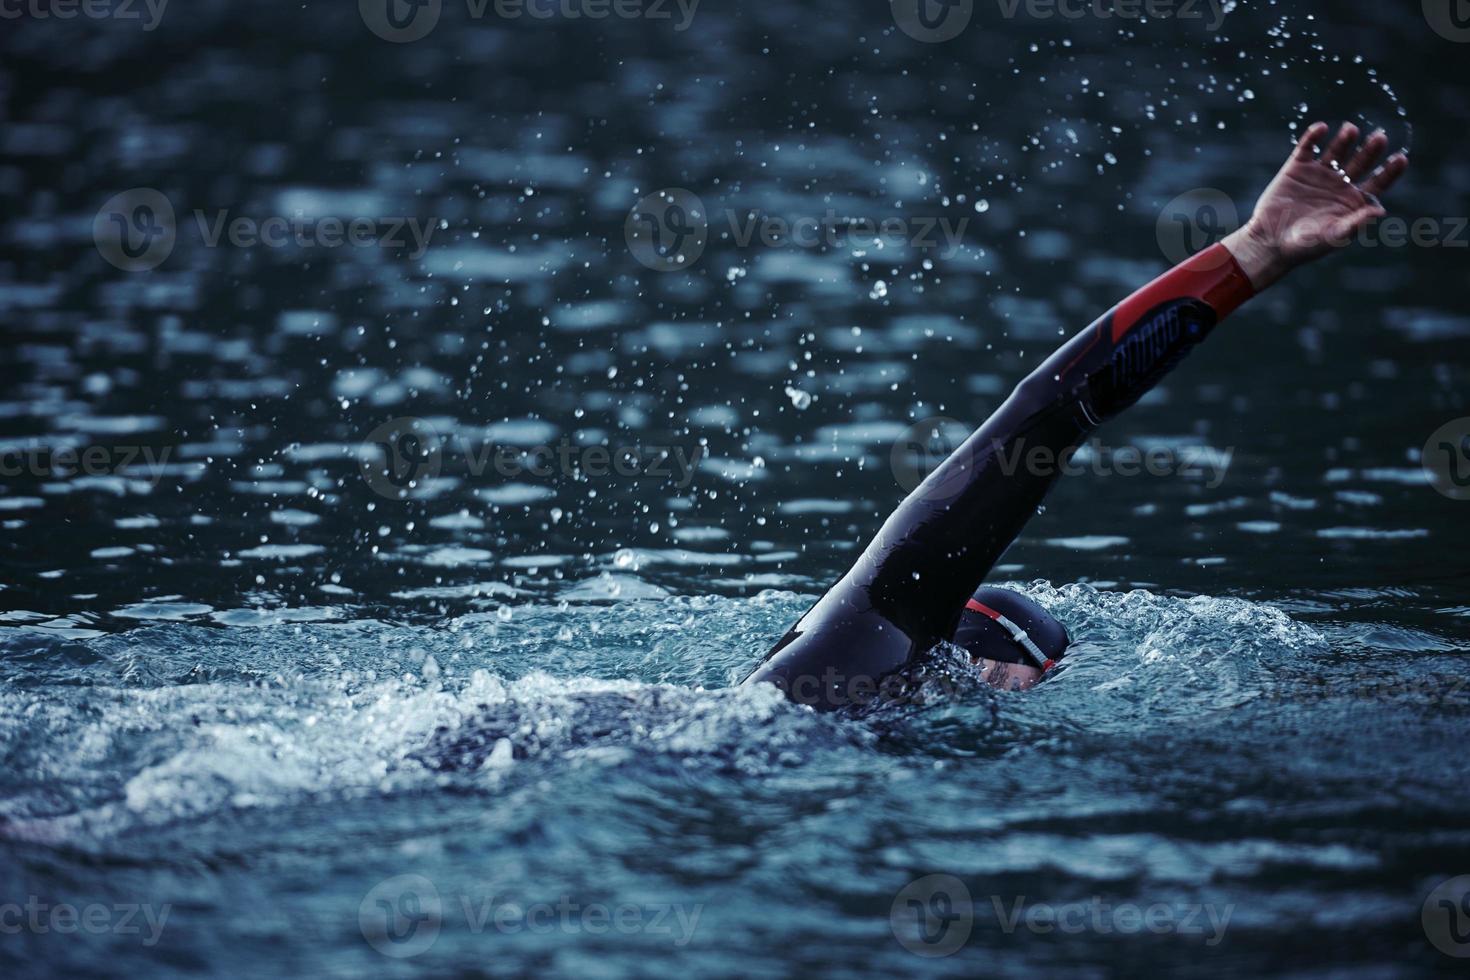 atleta de triatlón nadando en el lago al amanecer usando traje de neopreno foto